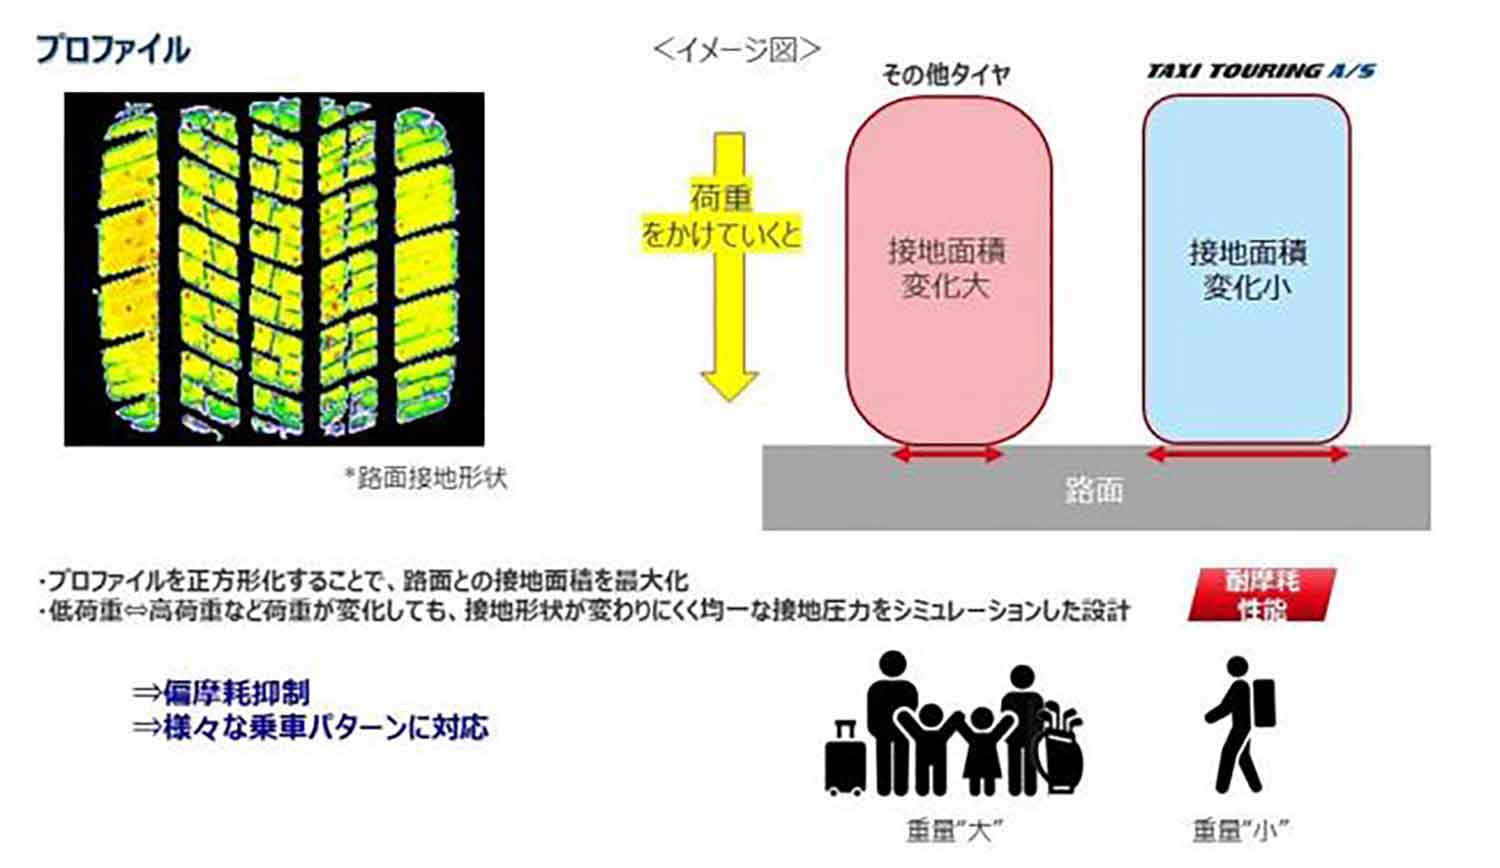 ヨコハマタイヤの「TAXI TOURING A/S」のプロファイル形状の解説図 〜 画像3